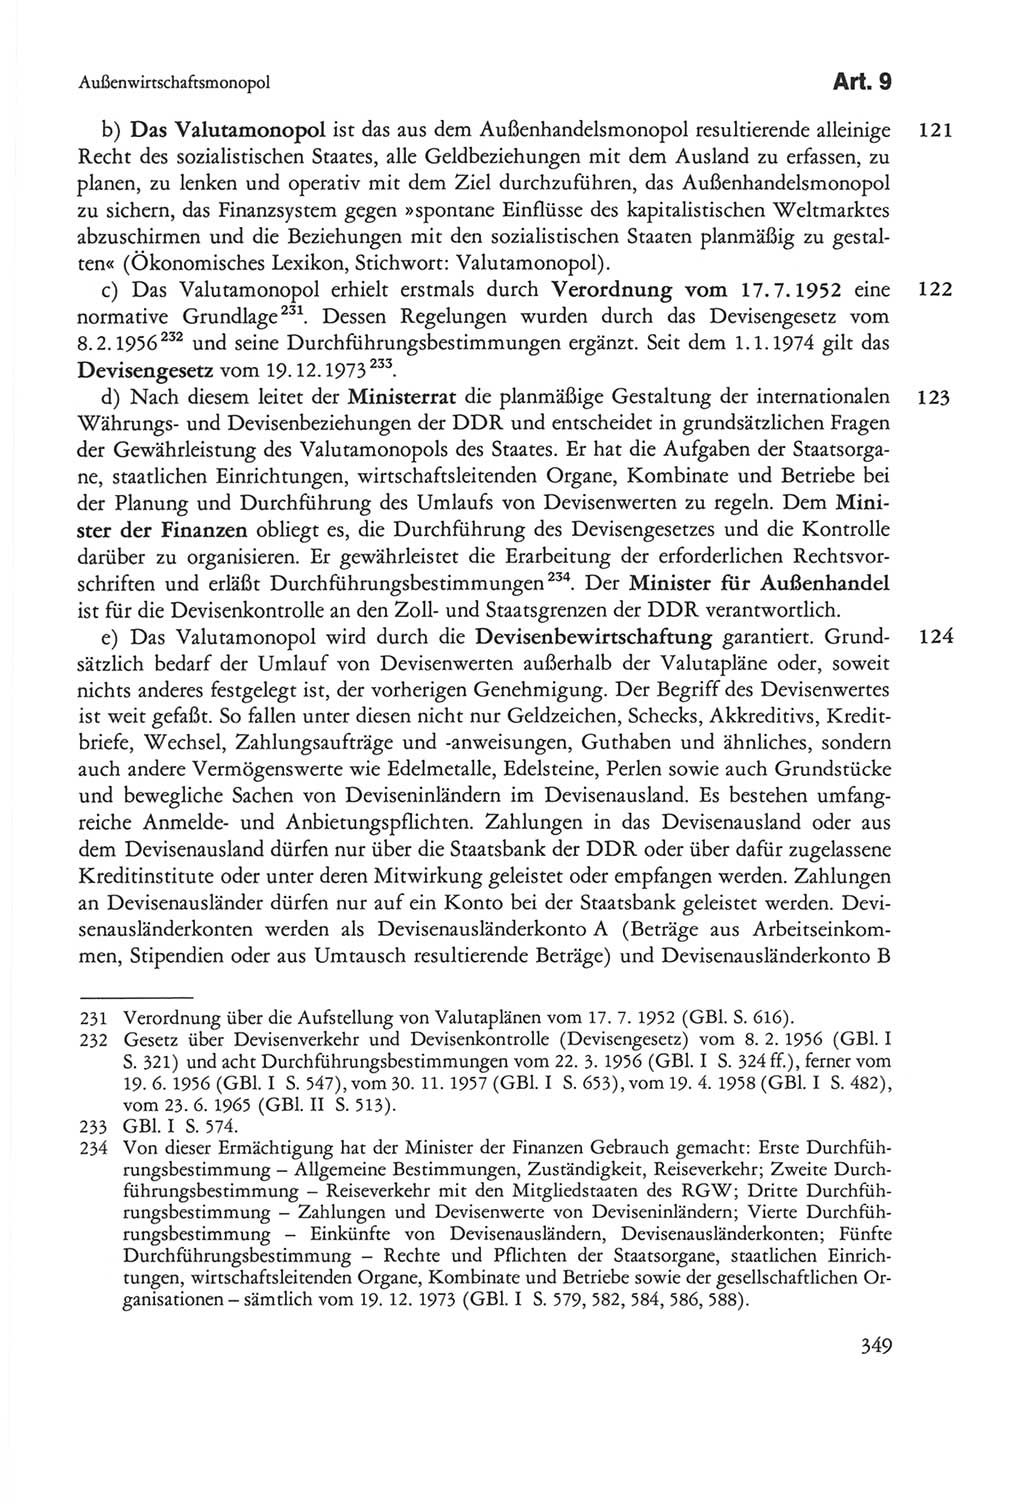 Die sozialistische Verfassung der Deutschen Demokratischen Republik (DDR), Kommentar mit einem Nachtrag 1997, Seite 349 (Soz. Verf. DDR Komm. Nachtr. 1997, S. 349)